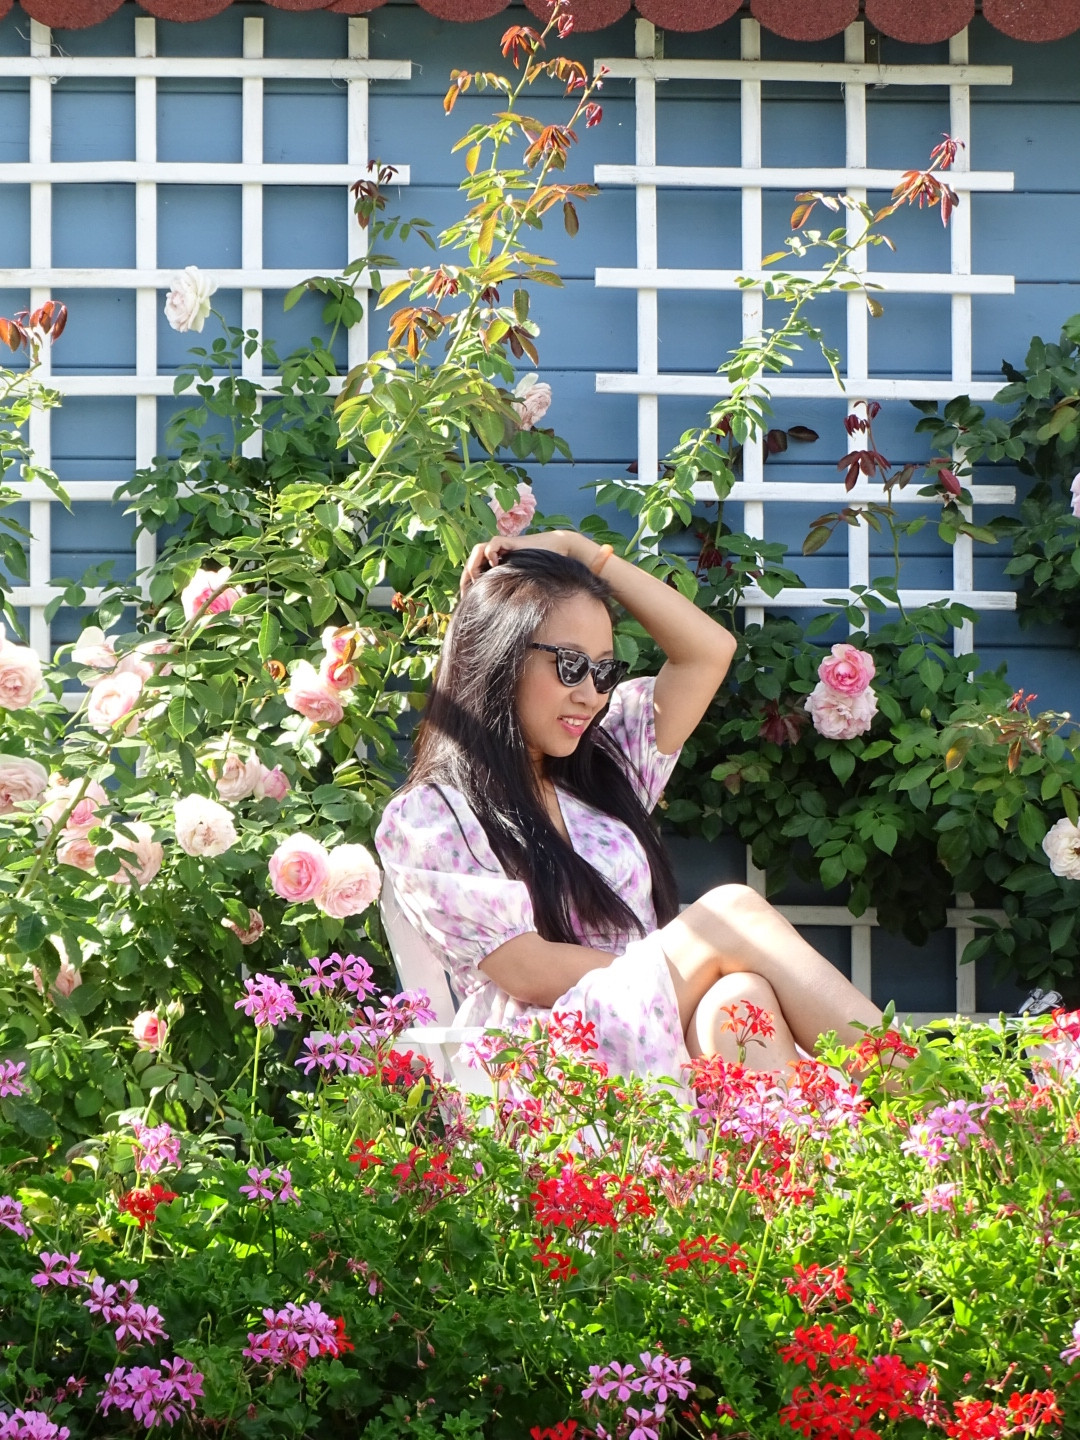 Gia đình Việt tại Đức biến nhà vườn 750m2 thành 'resort hoa hồng' ngàn người mê